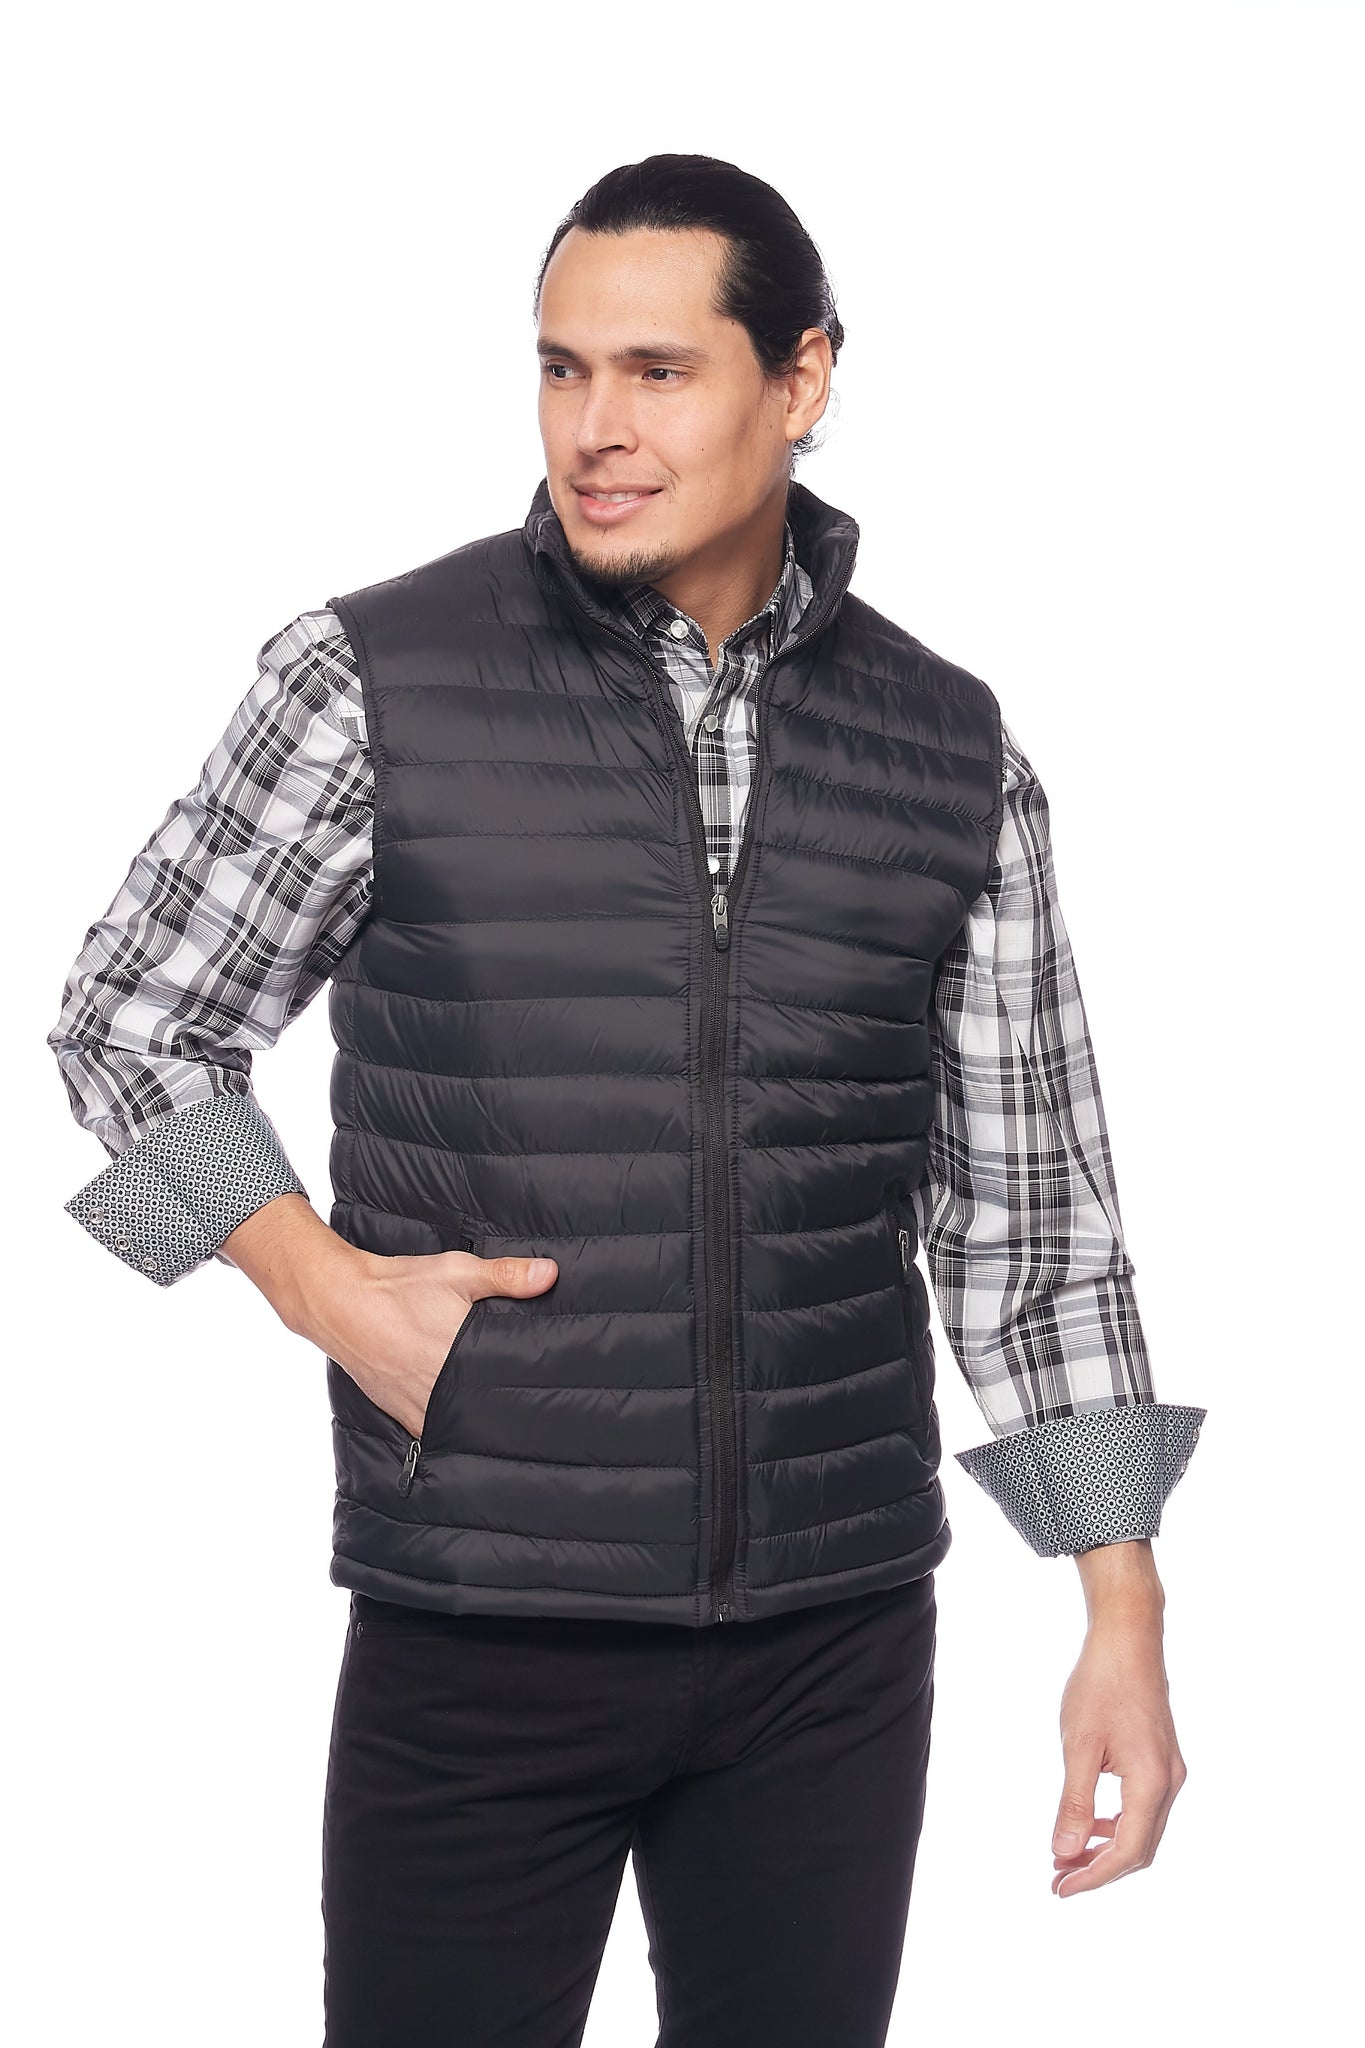 Men's Nylon Quilted Sleeveless Vest-NV640-Black/Grey